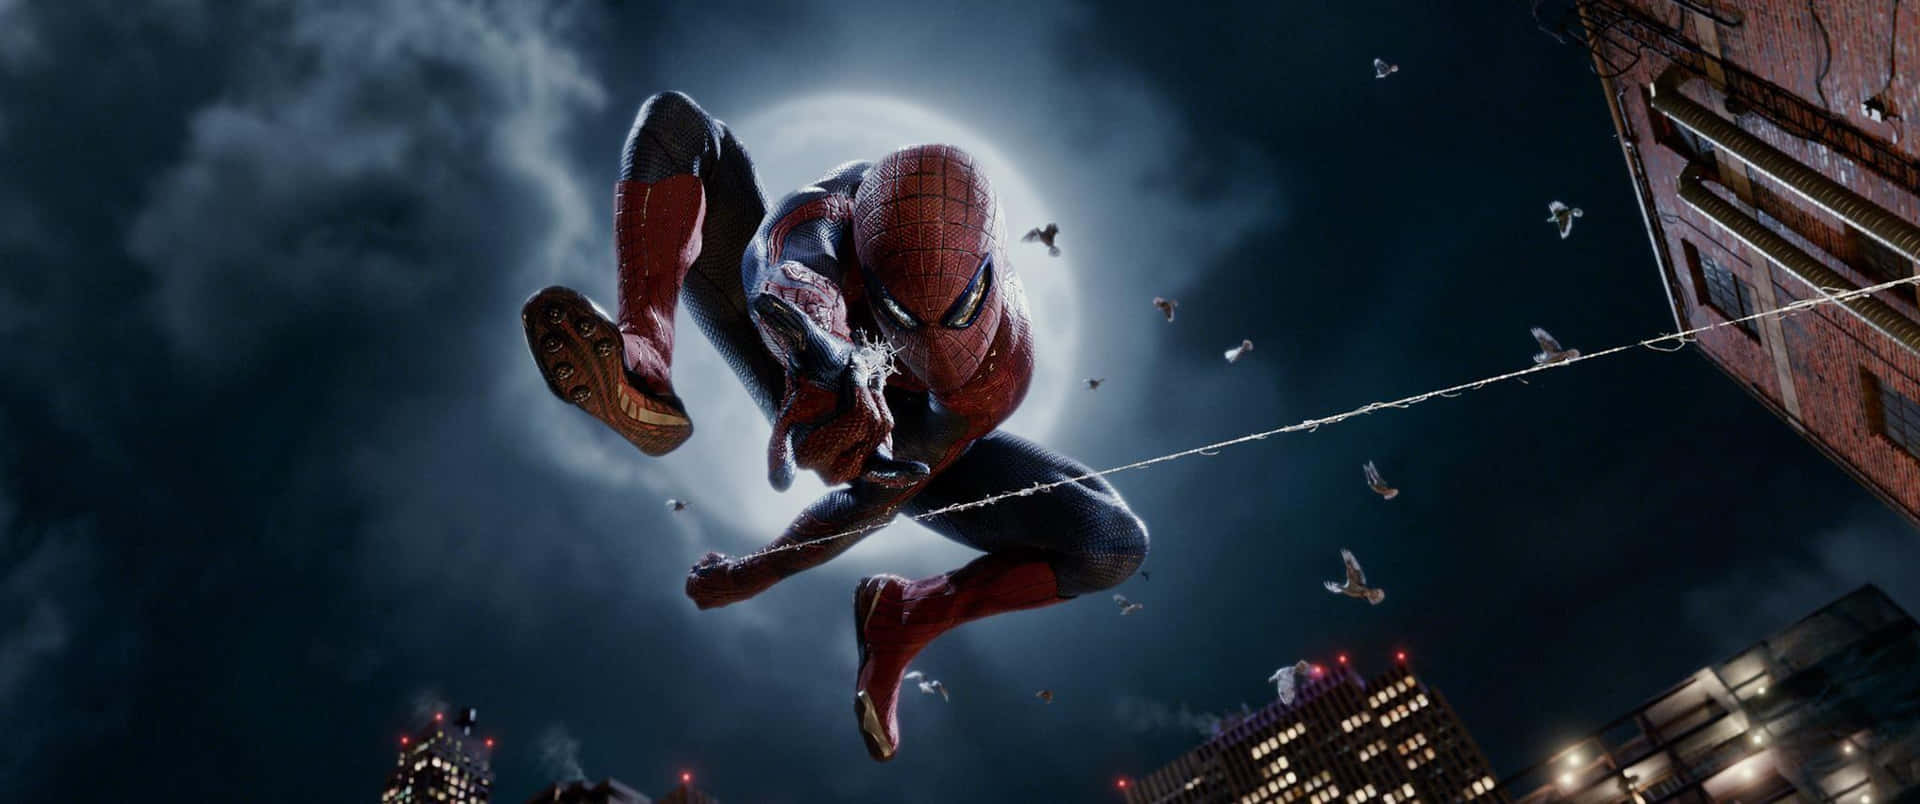 Imagenpóster De La Película Spider-man 2 Fondo de pantalla